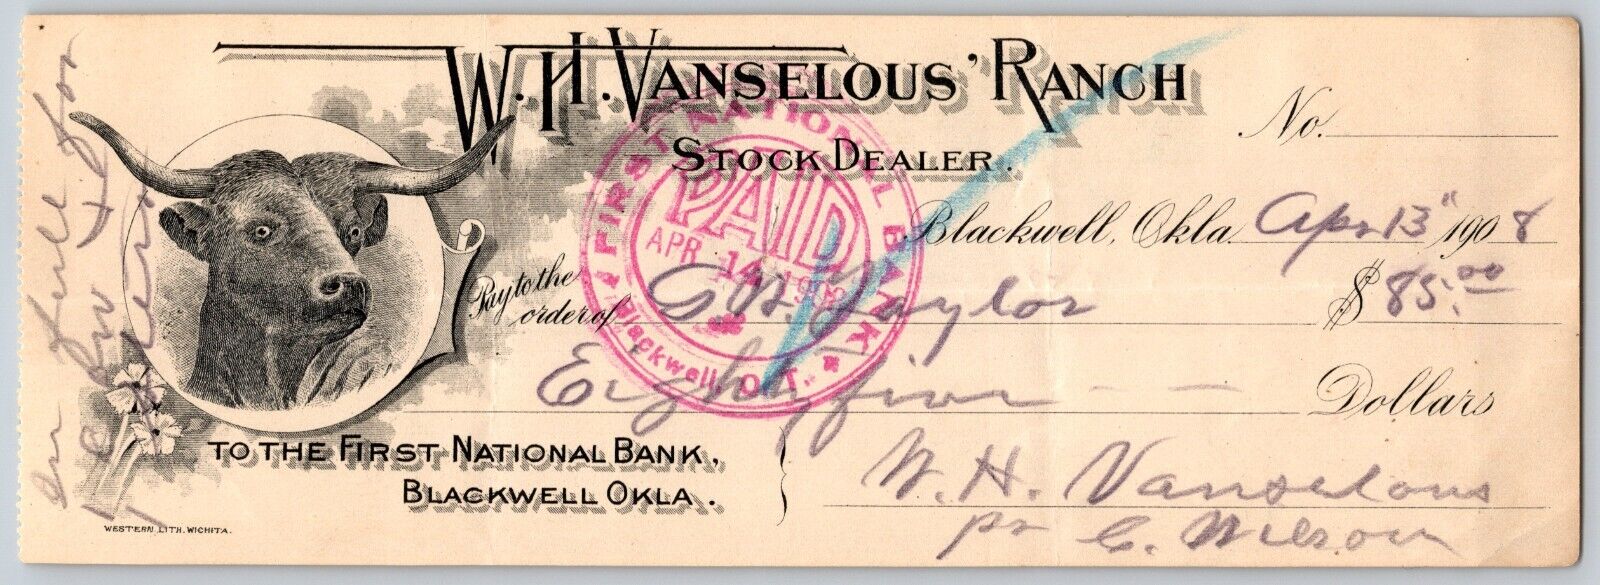 Blackwell OK 1908 V.H. Vanselous Ranch Check w/ Bull Vignette - Scarce